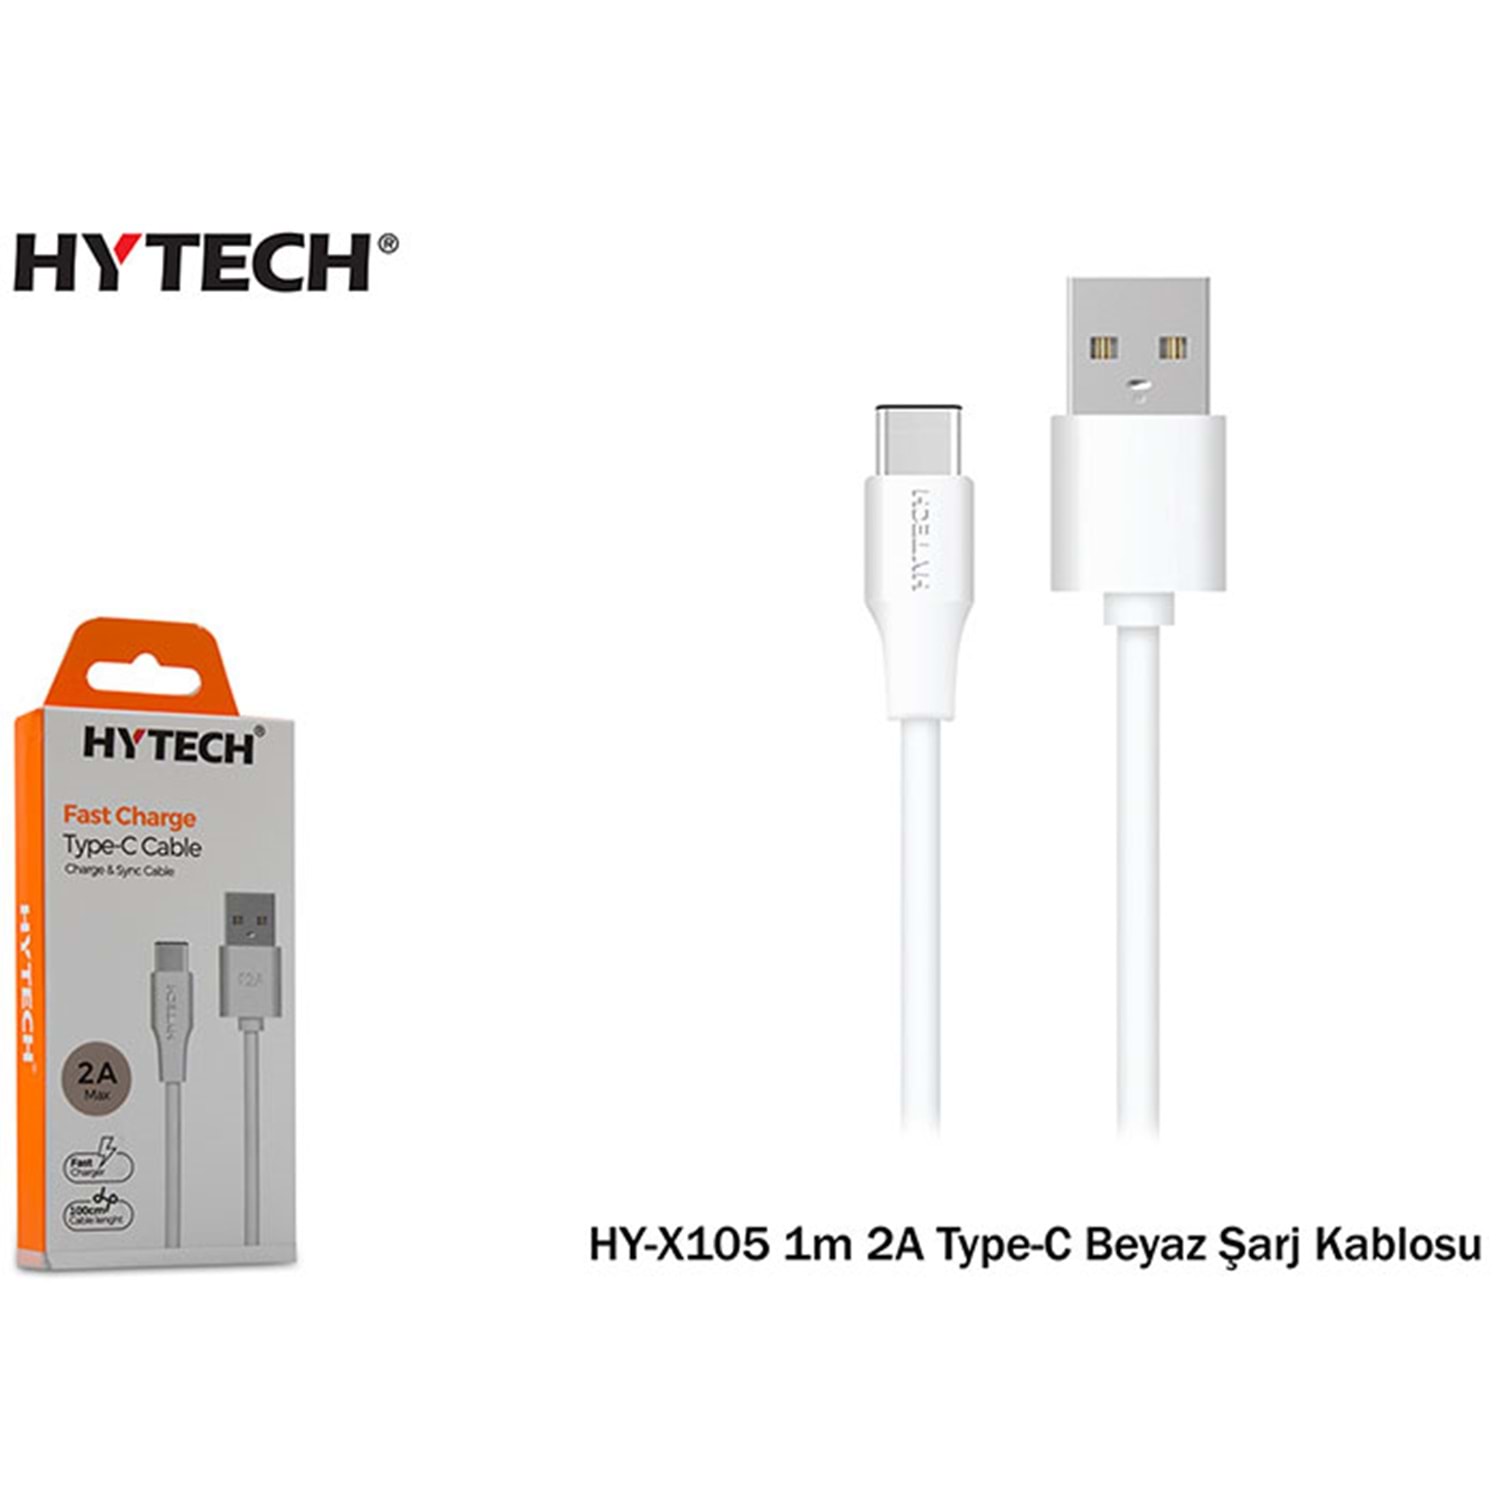 Hytech HY-X105 1m 2A Type-C Beyaz Şarj Kablosu